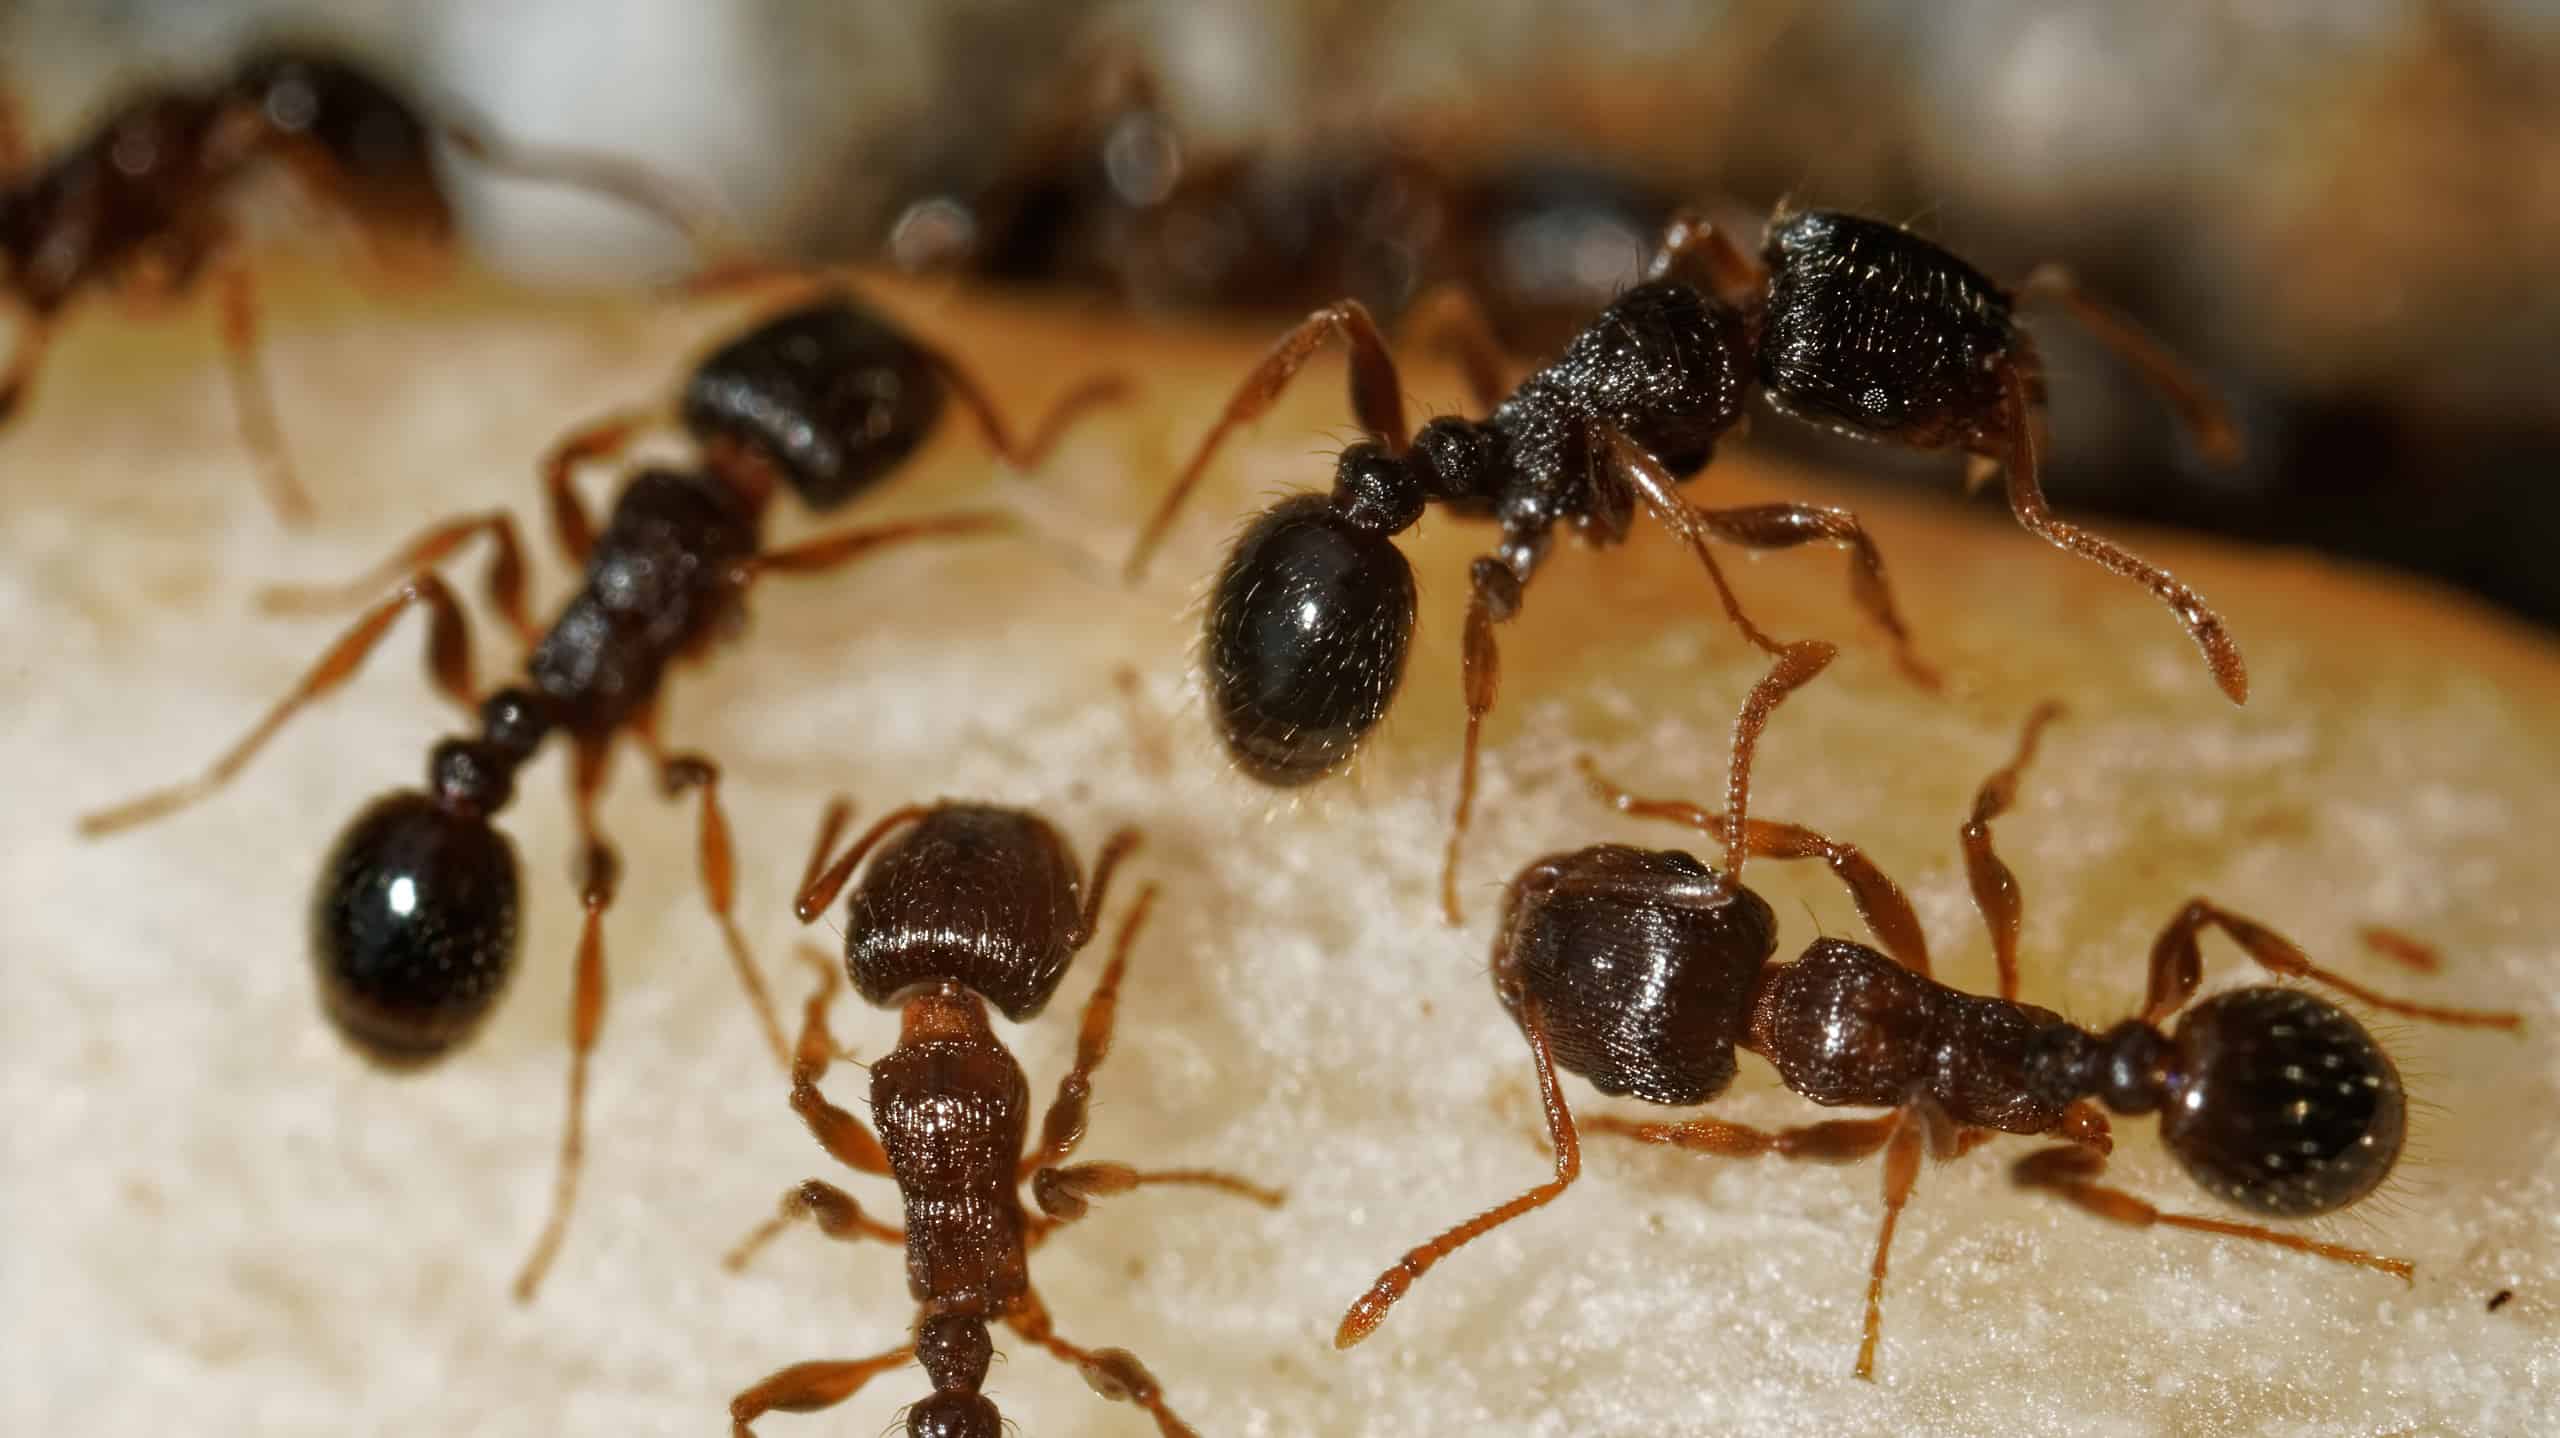 Tetramorium immigrans ants foraging